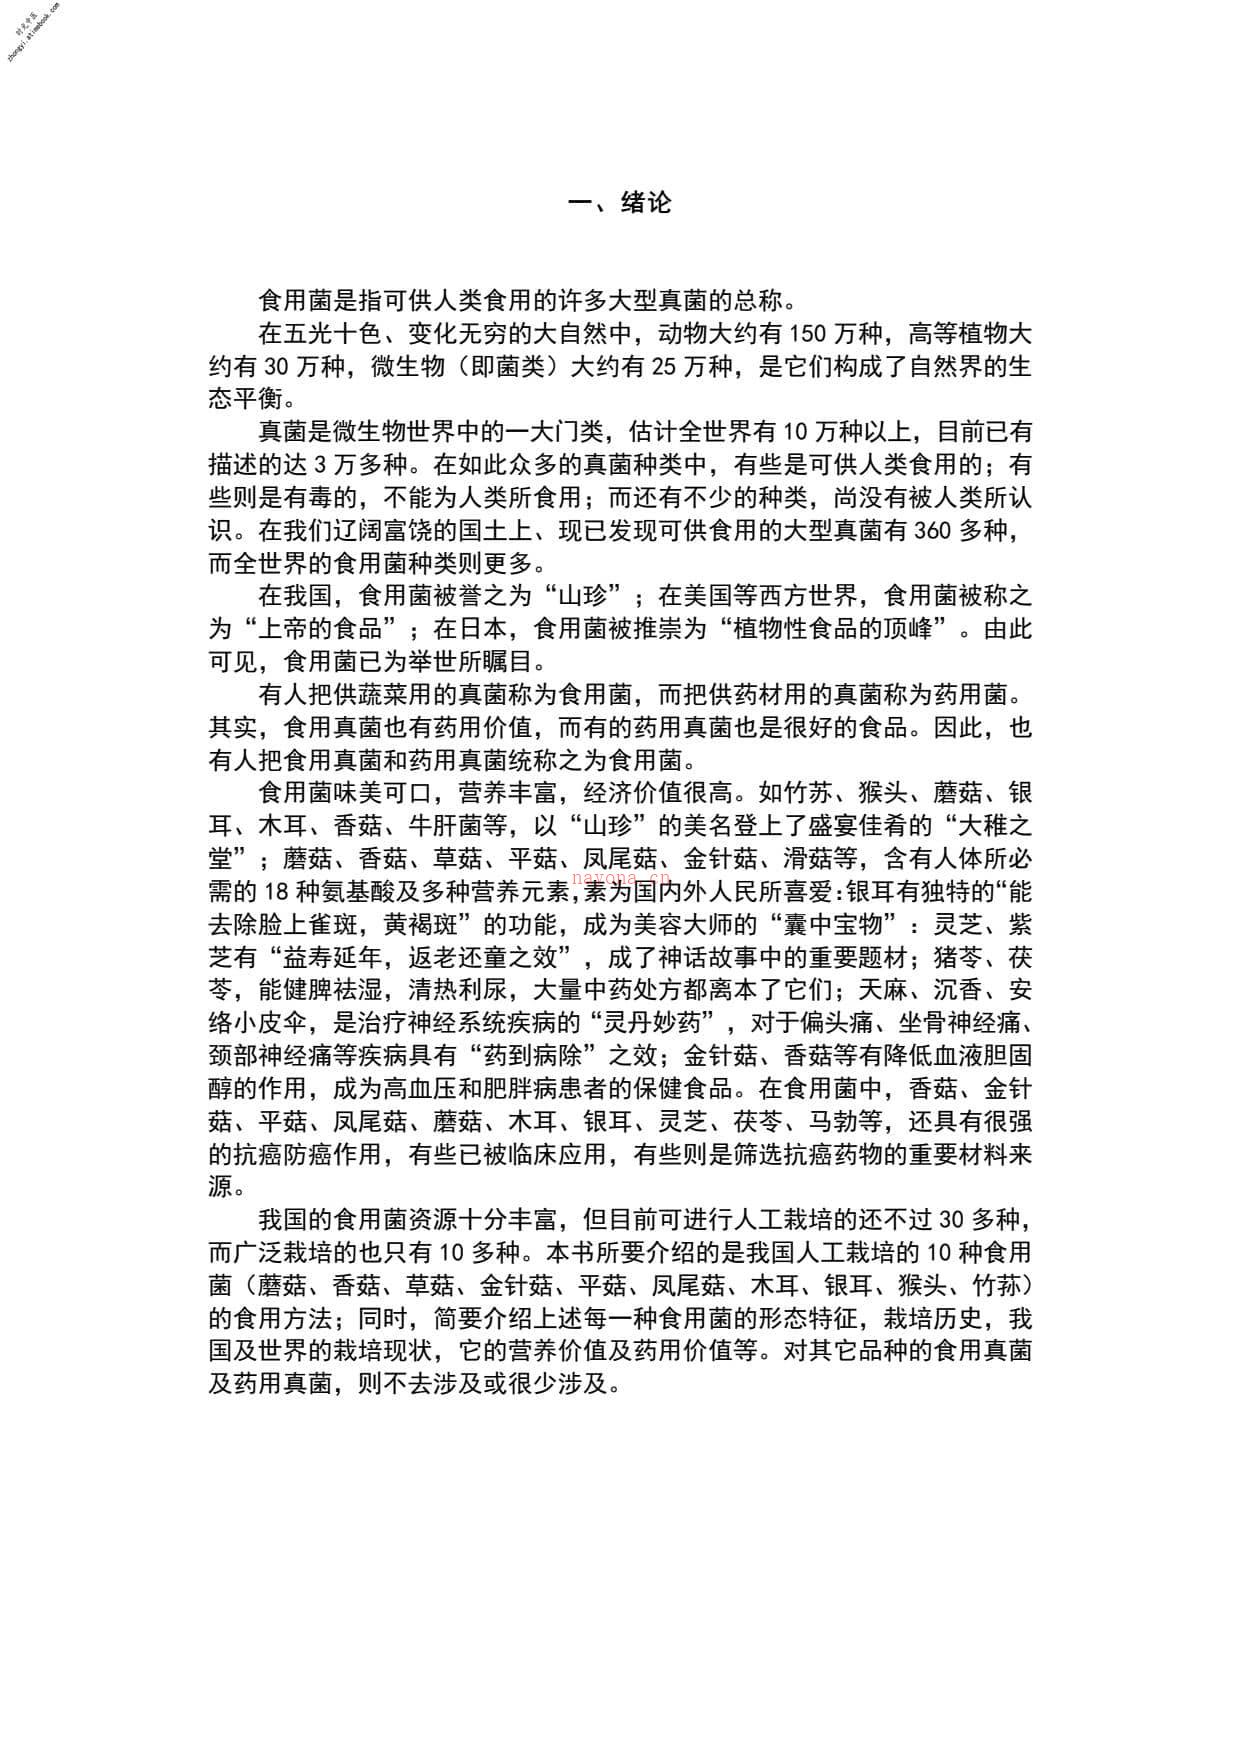 中国食用蘑菇大观 PDF电子版下载